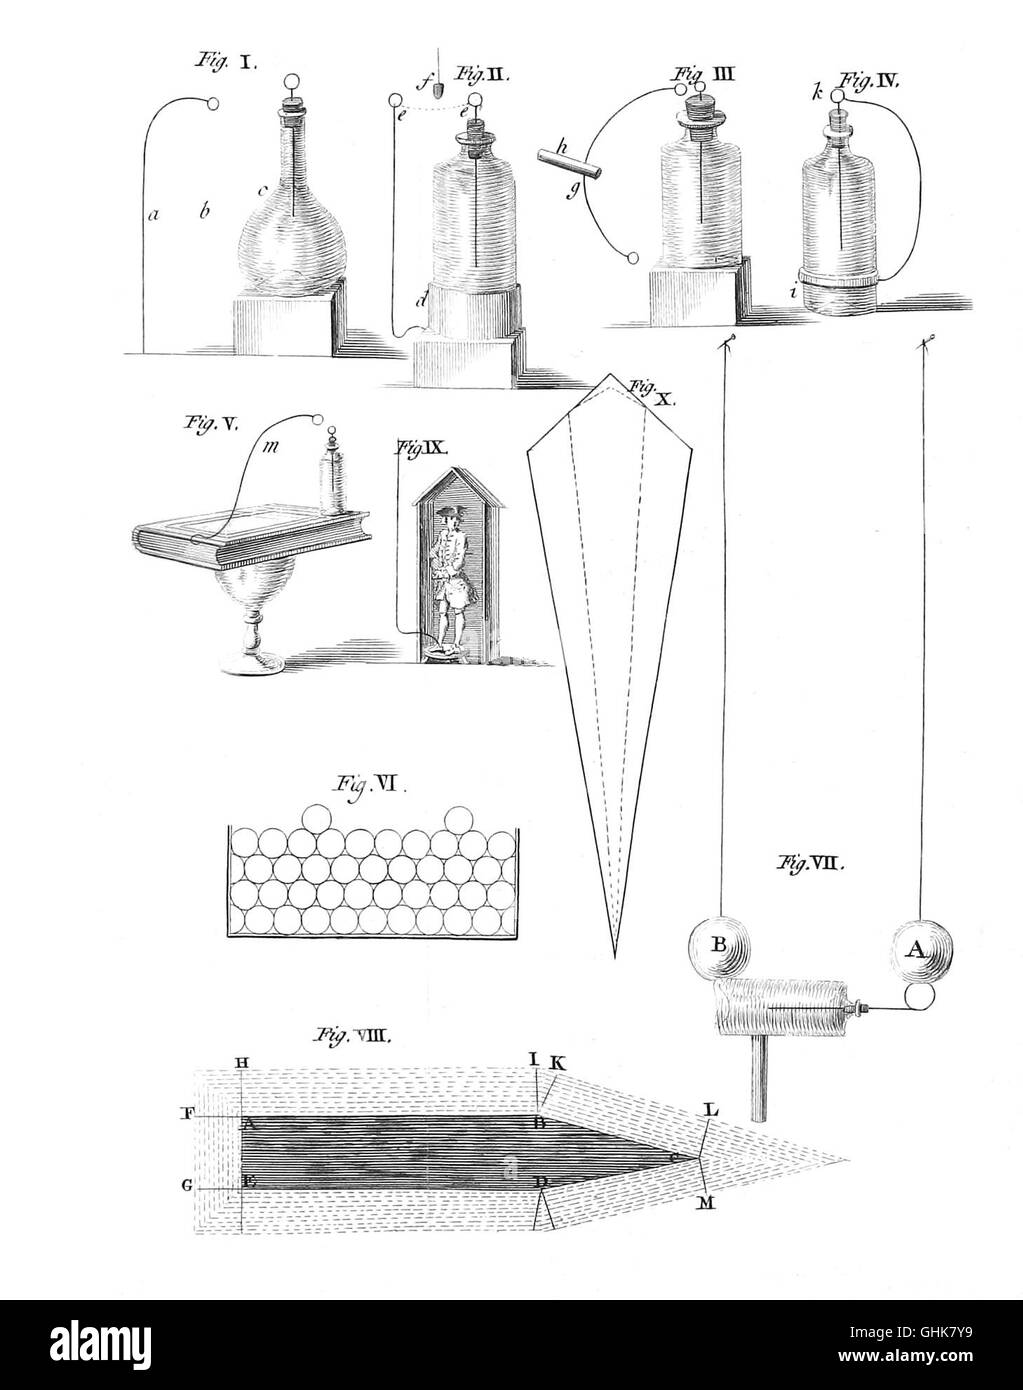 Franklin's 'Experimentos con electricidad" de 1774. Foto de stock